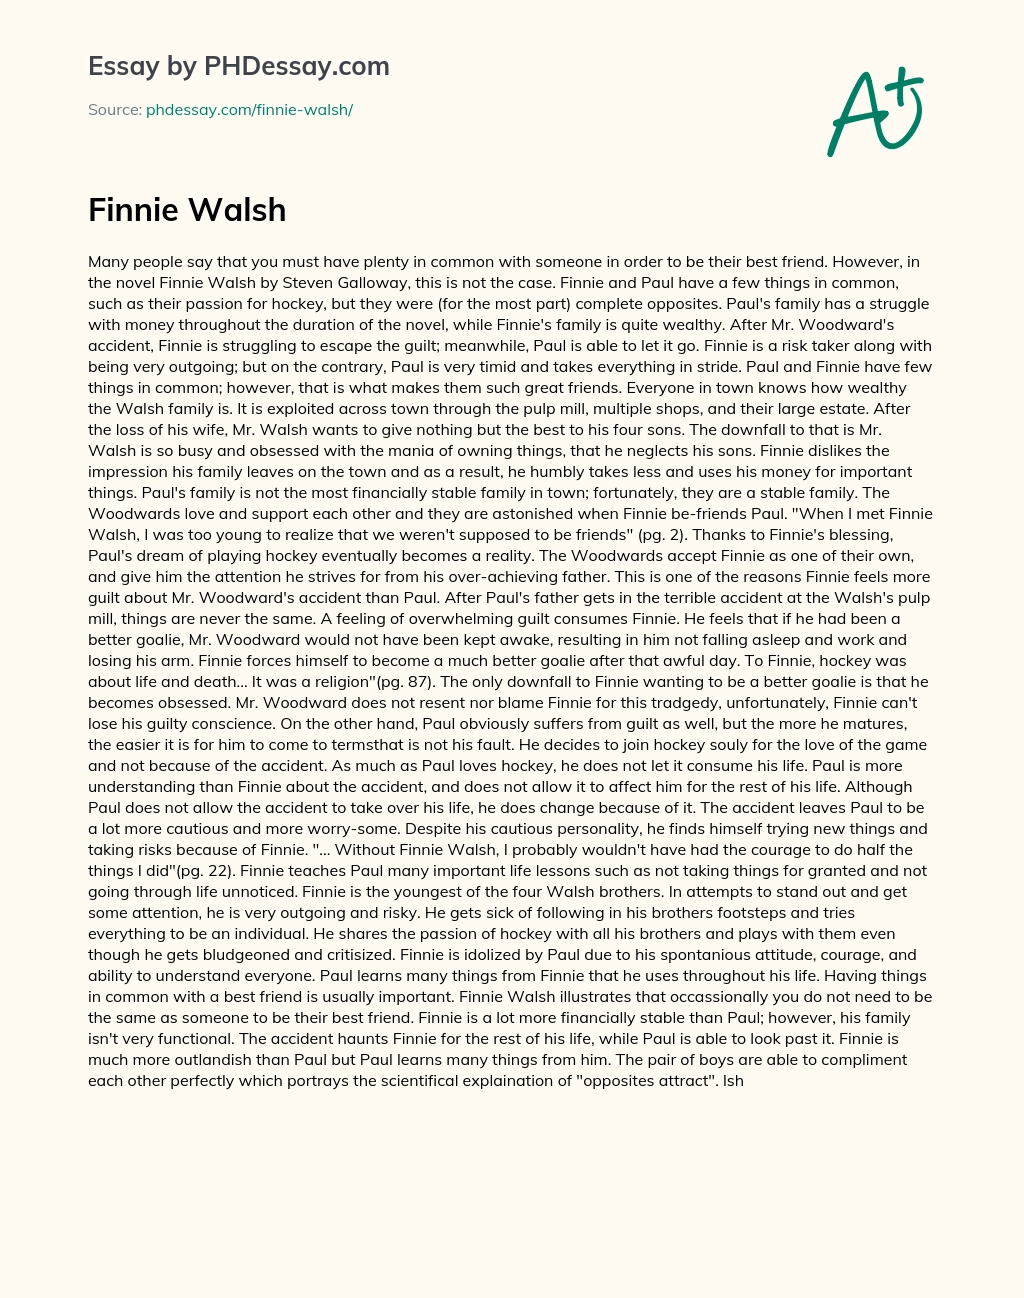 Finnie Walsh essay